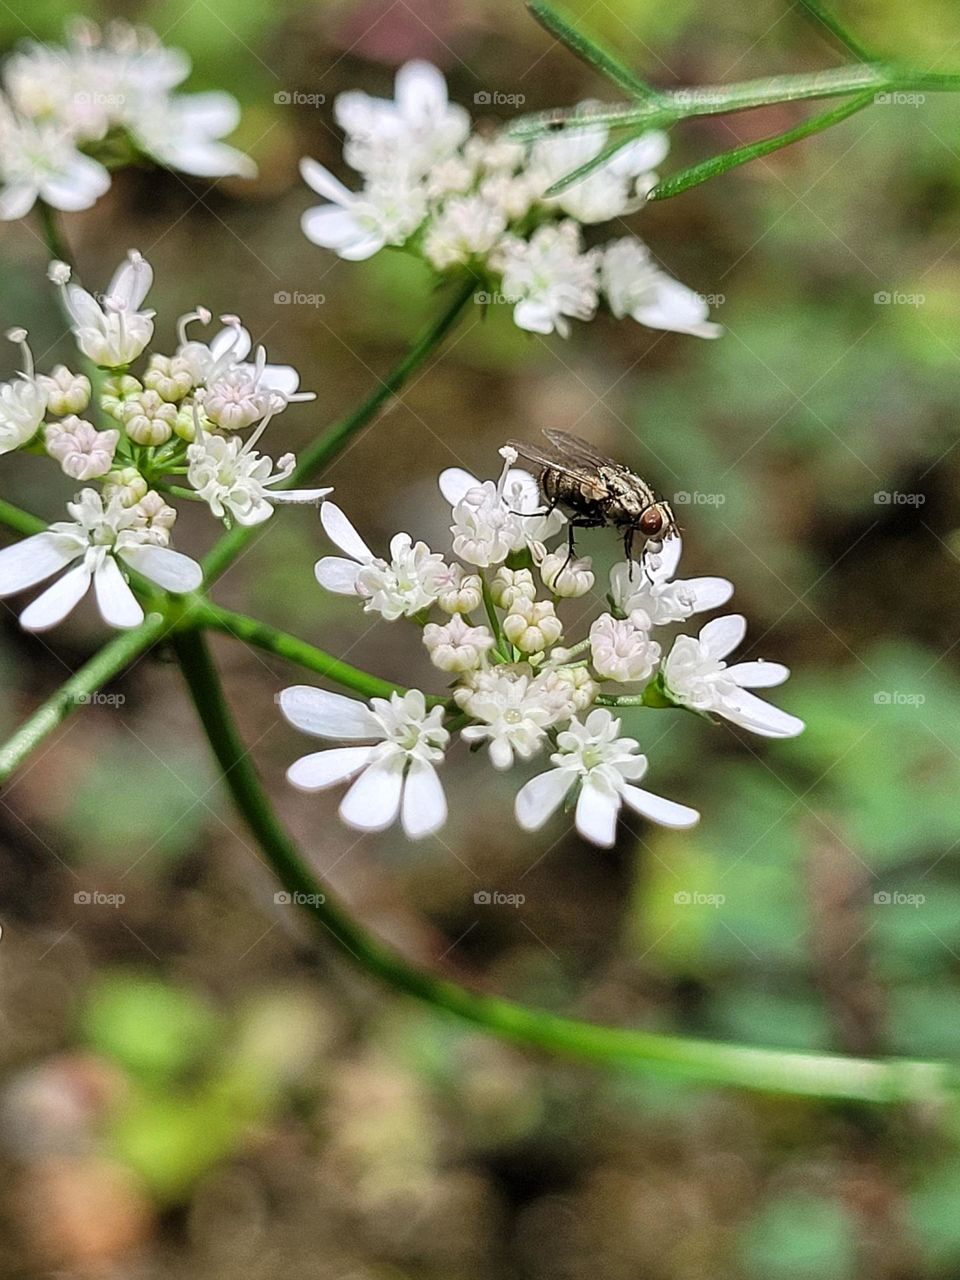 fly, flower